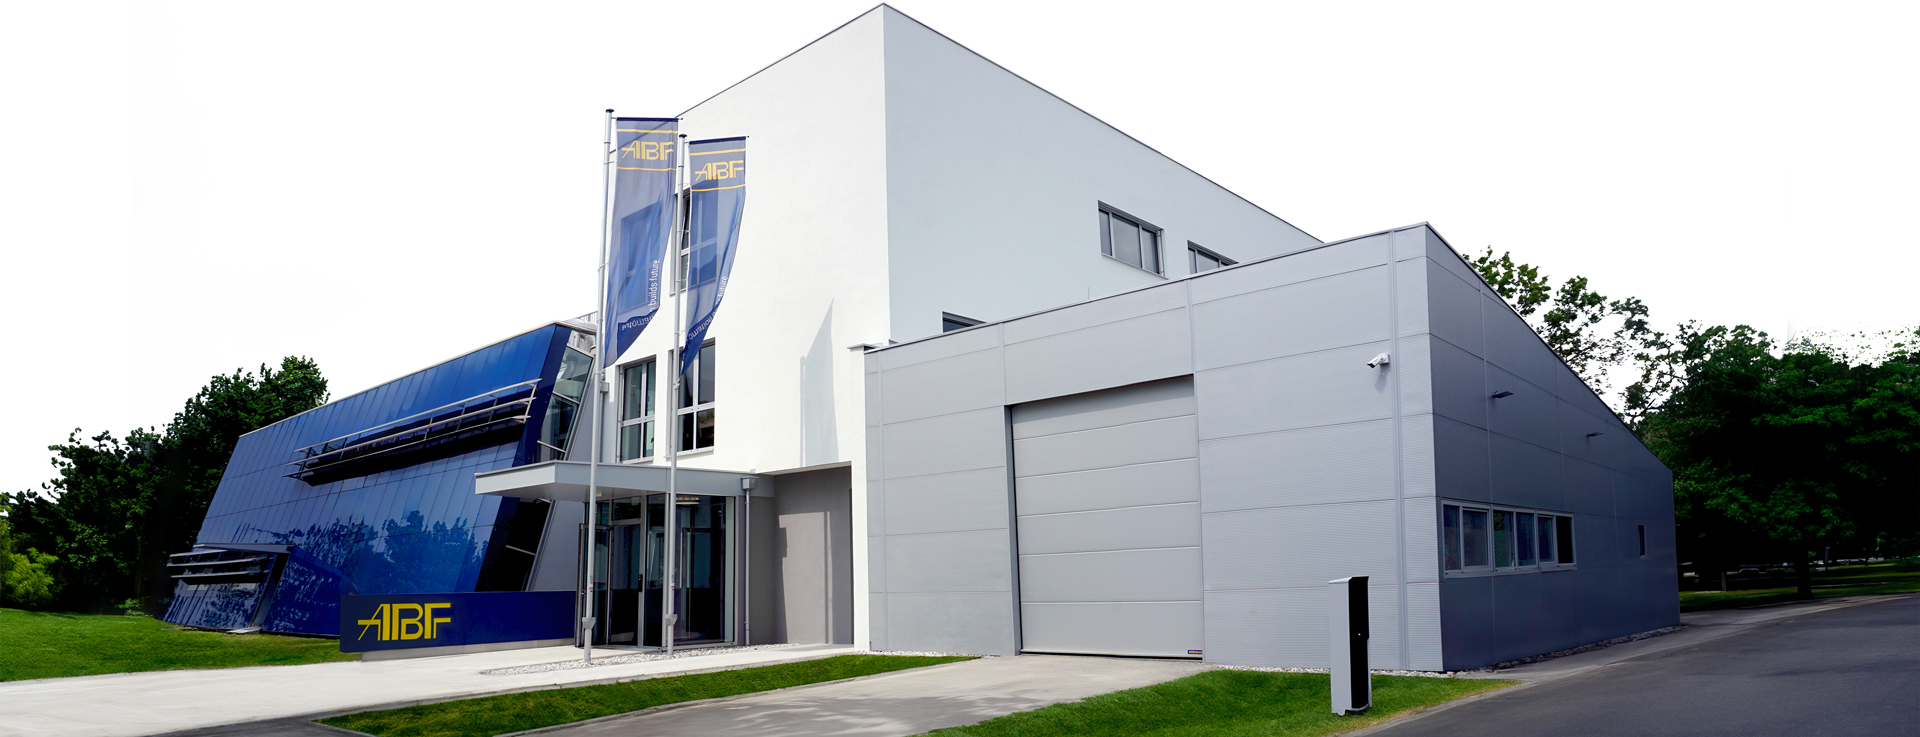 Das Gebäude der ABF GmbH